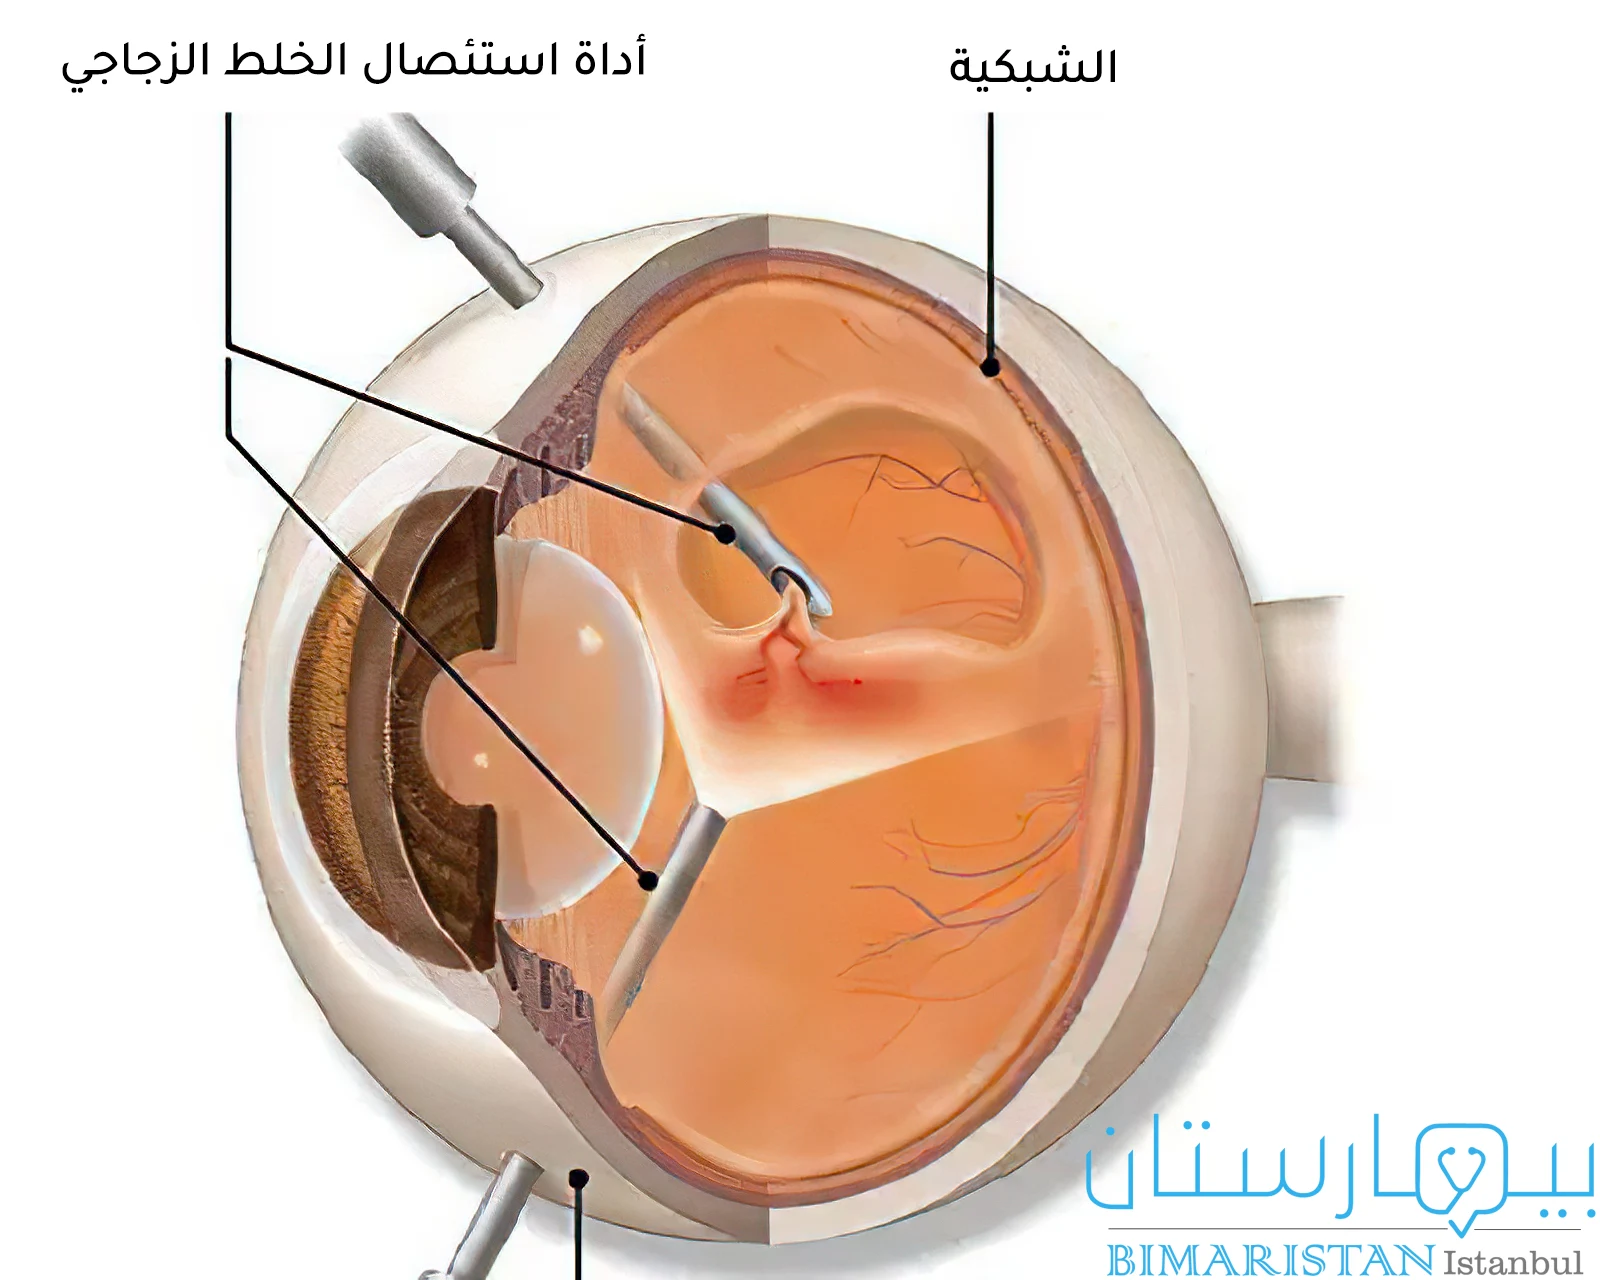 Vitrektomi ile retina dekolmanı tedavisini gösteren resim